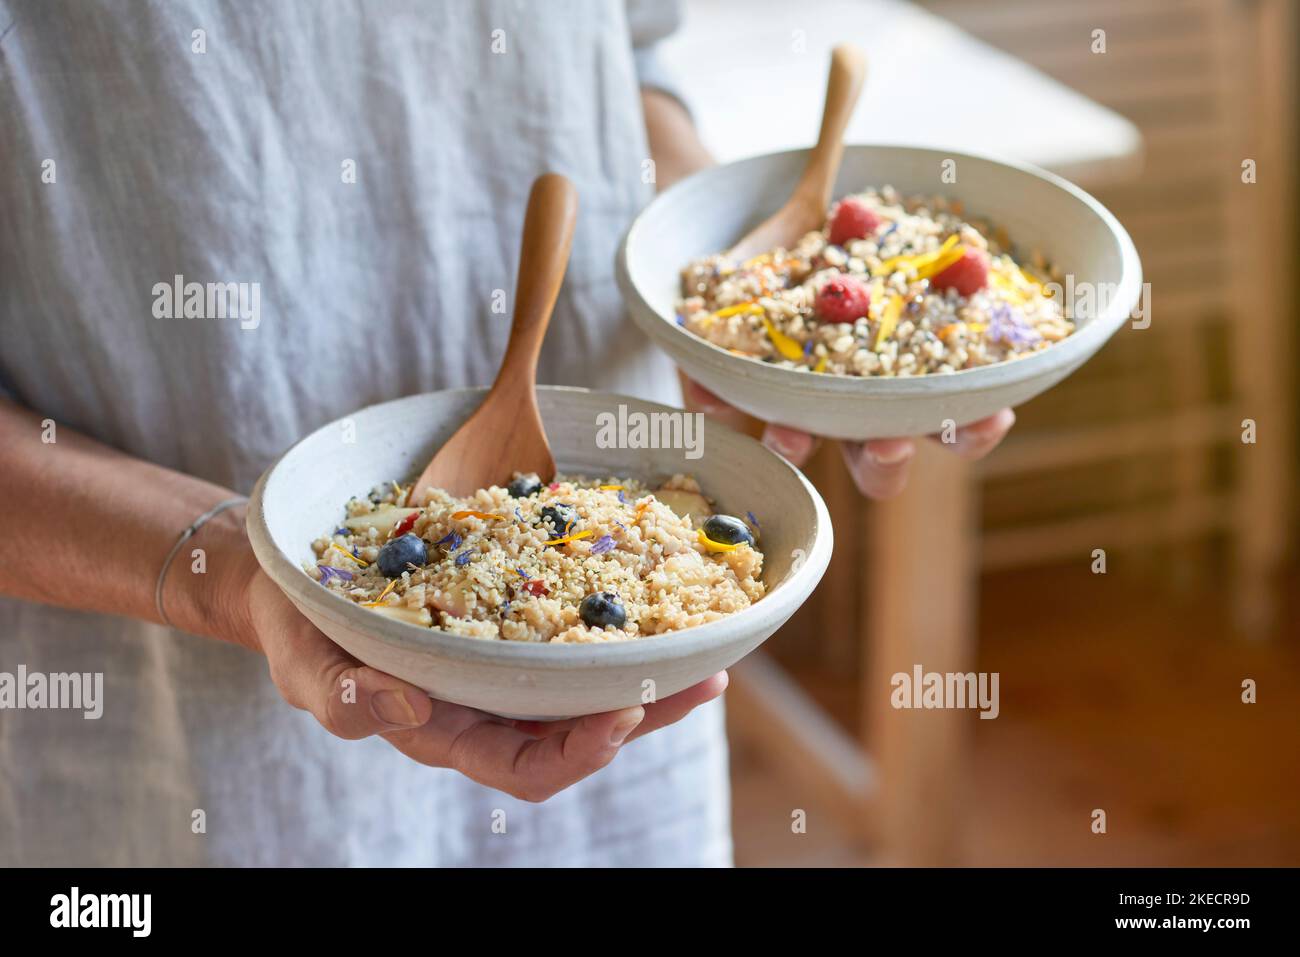 ayurvedische Küche, Frau hält zwei leichte Tonschüsseln mit Grießbrei und Früchten in den Händen Stockfoto